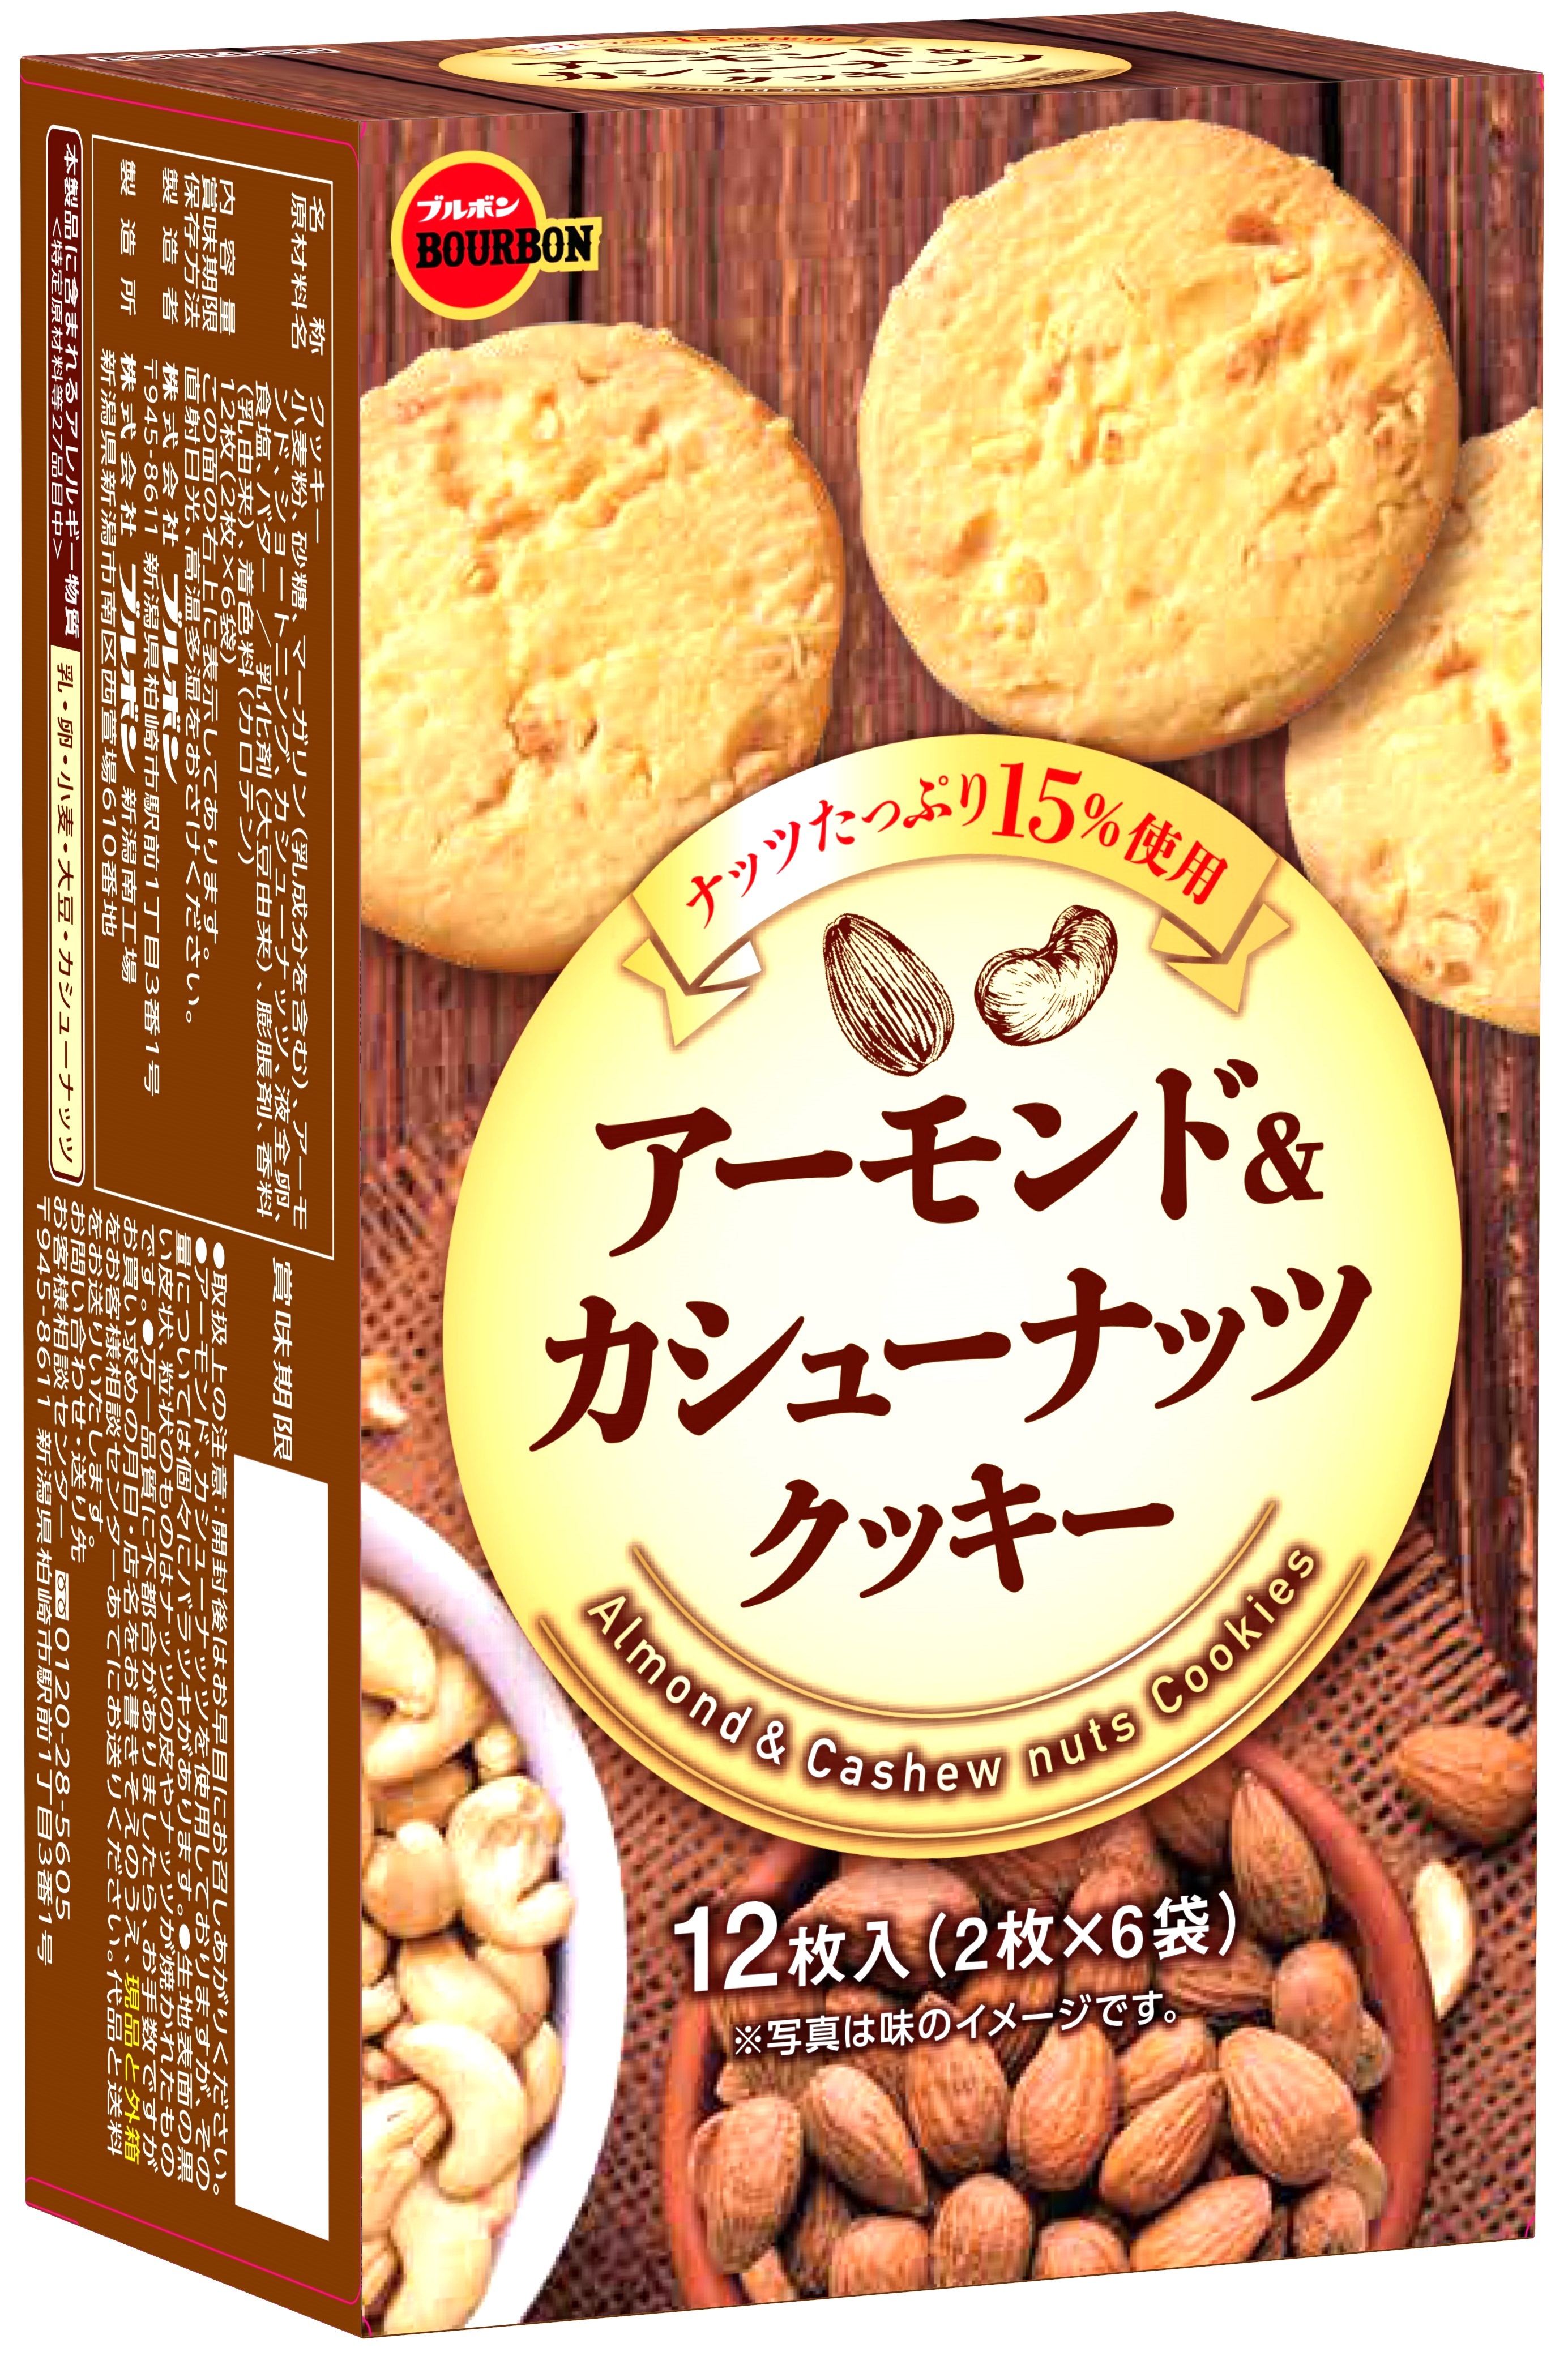 ブルボン、ナッツたっぷりの香ばしい味わい
「アーモンド＆カシューナッツクッキー」を
2月18日(火)に新発売！